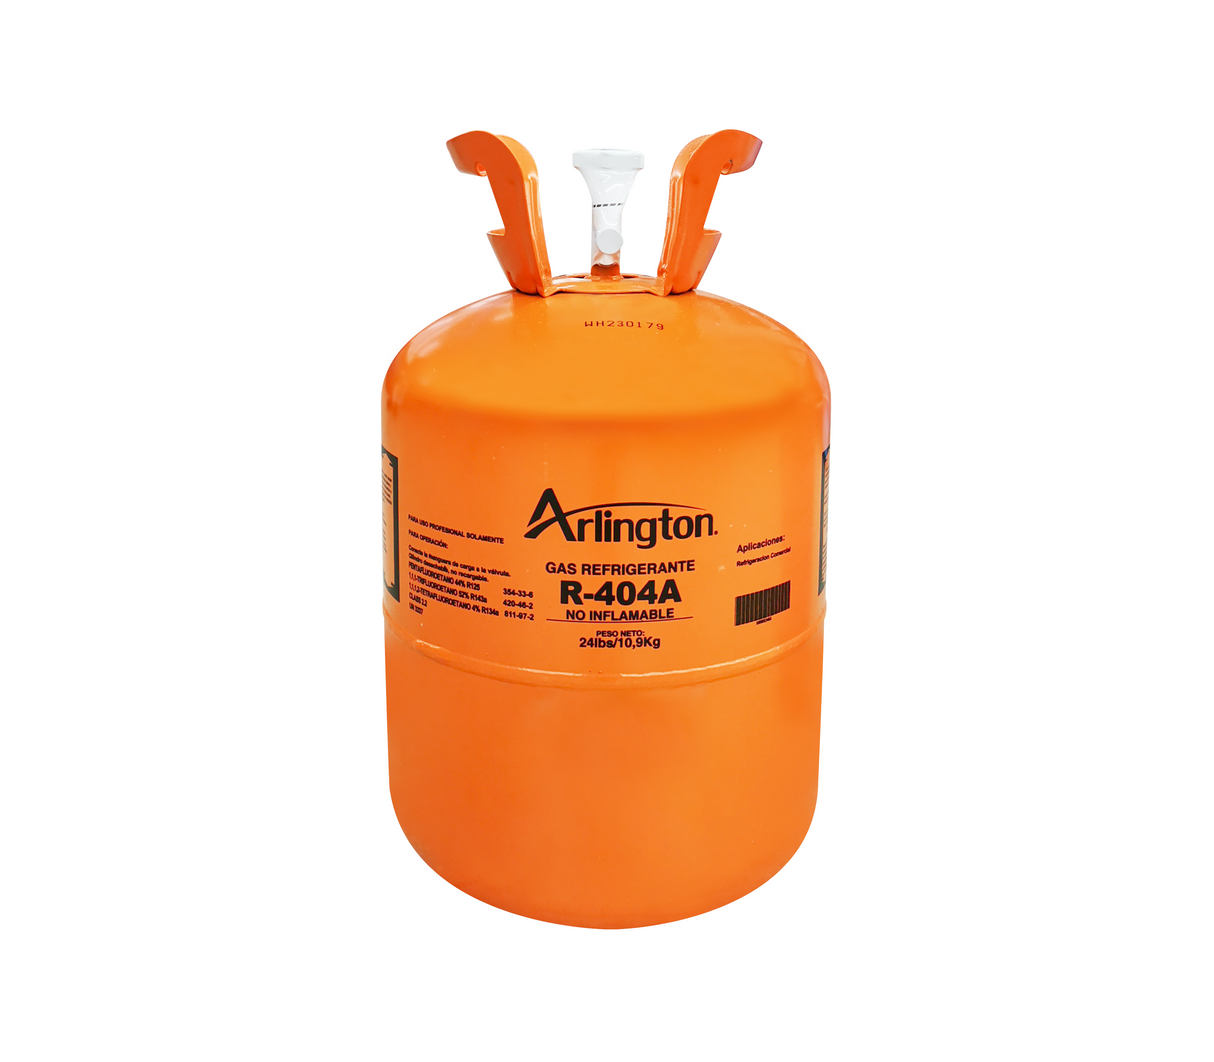 Gas refrigerante R-404A 10,90kg Arlington